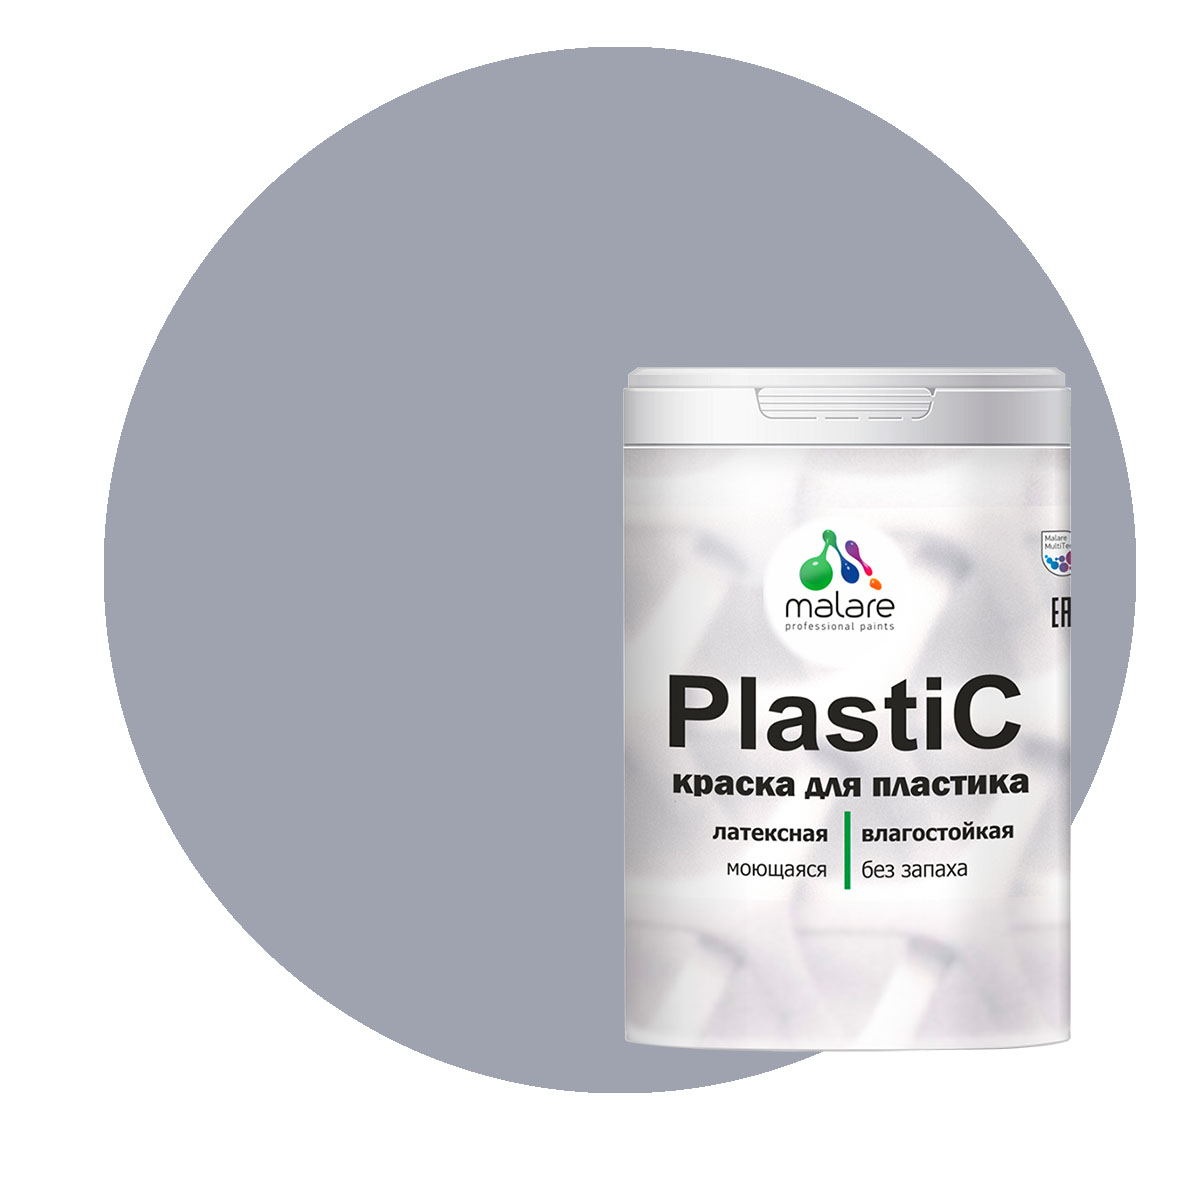 Краска Malare PlastiC для пластика, ПВХ, для сайдинга, темно-серый 1 кг. краска malare plastic для пластика пвх для сайдинга темно серый 1 кг